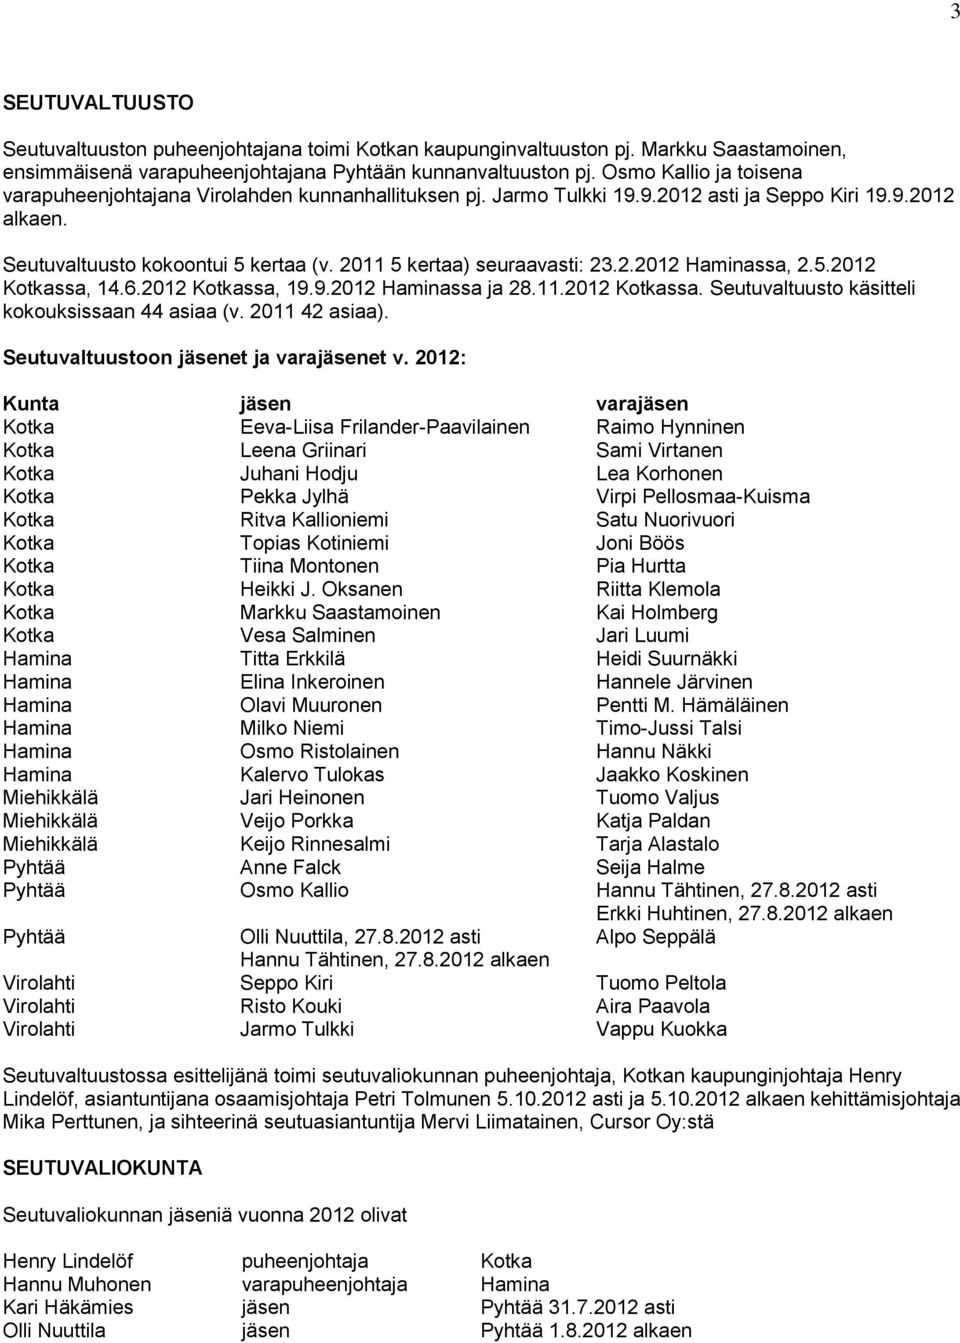 2011 5 kertaa) seuraavasti: 23.2.2012 Haminassa, 2.5.2012 Kotkassa, 14.6.2012 Kotkassa, 19.9.2012 Haminassa ja 28.11.2012 Kotkassa. Seutuvaltuusto käsitteli kokouksissaan 44 asiaa (v. 2011 42 asiaa).